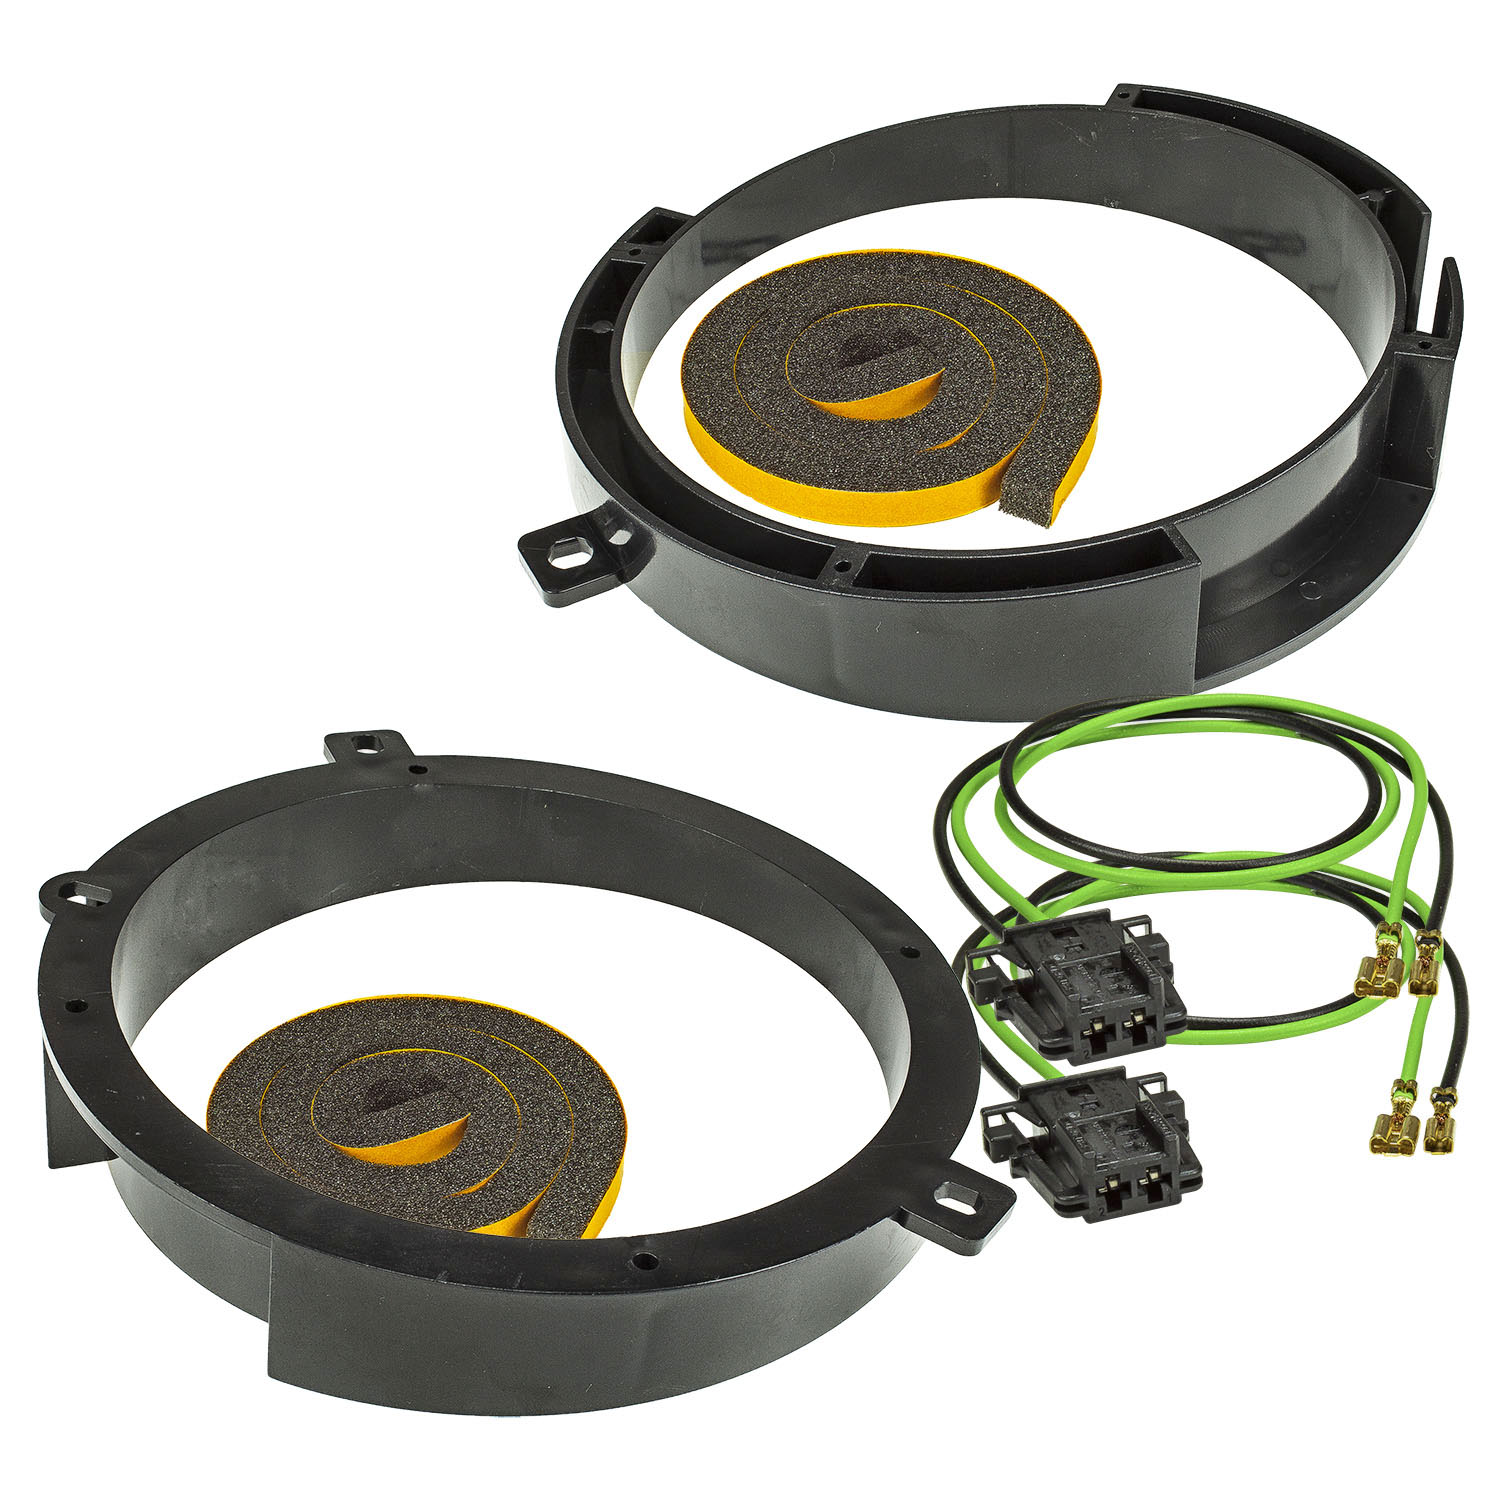 Lautsprecher Adapter Set kompatibel mit Mercedes C-Klasse W202 Türe Front Ringe + Adapterkabel adaptiert auf 165er Lautsprecher